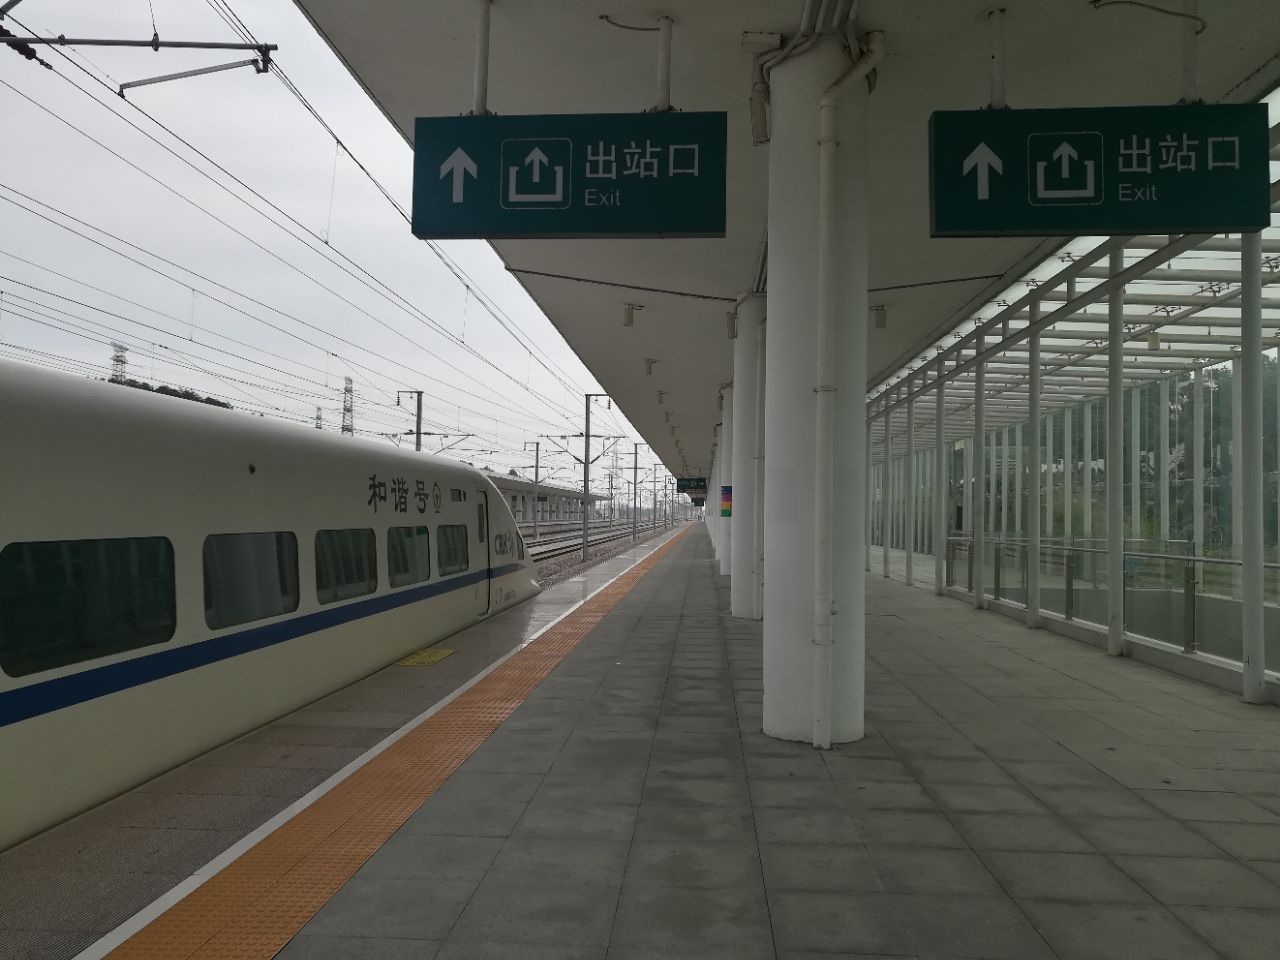 【携程攻略】三水南站,在县级市算比较不错的高铁站